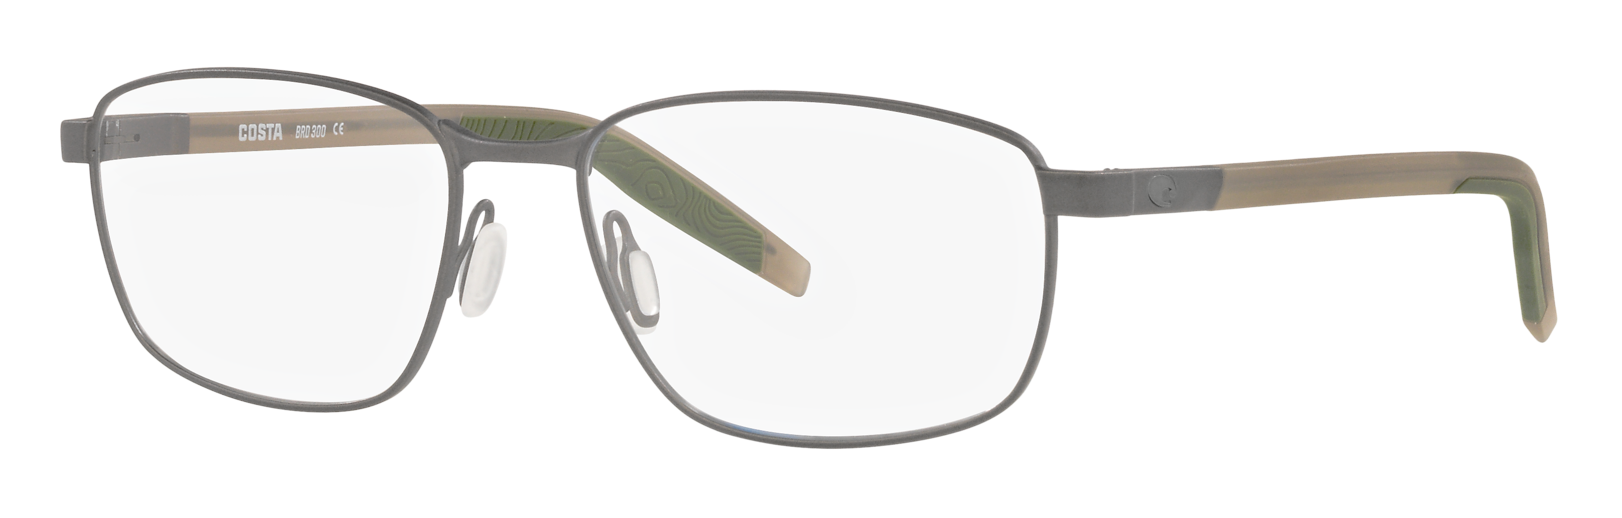 Costa Bimini Road 300 eyeglasses in gunmetal with clear lenses.